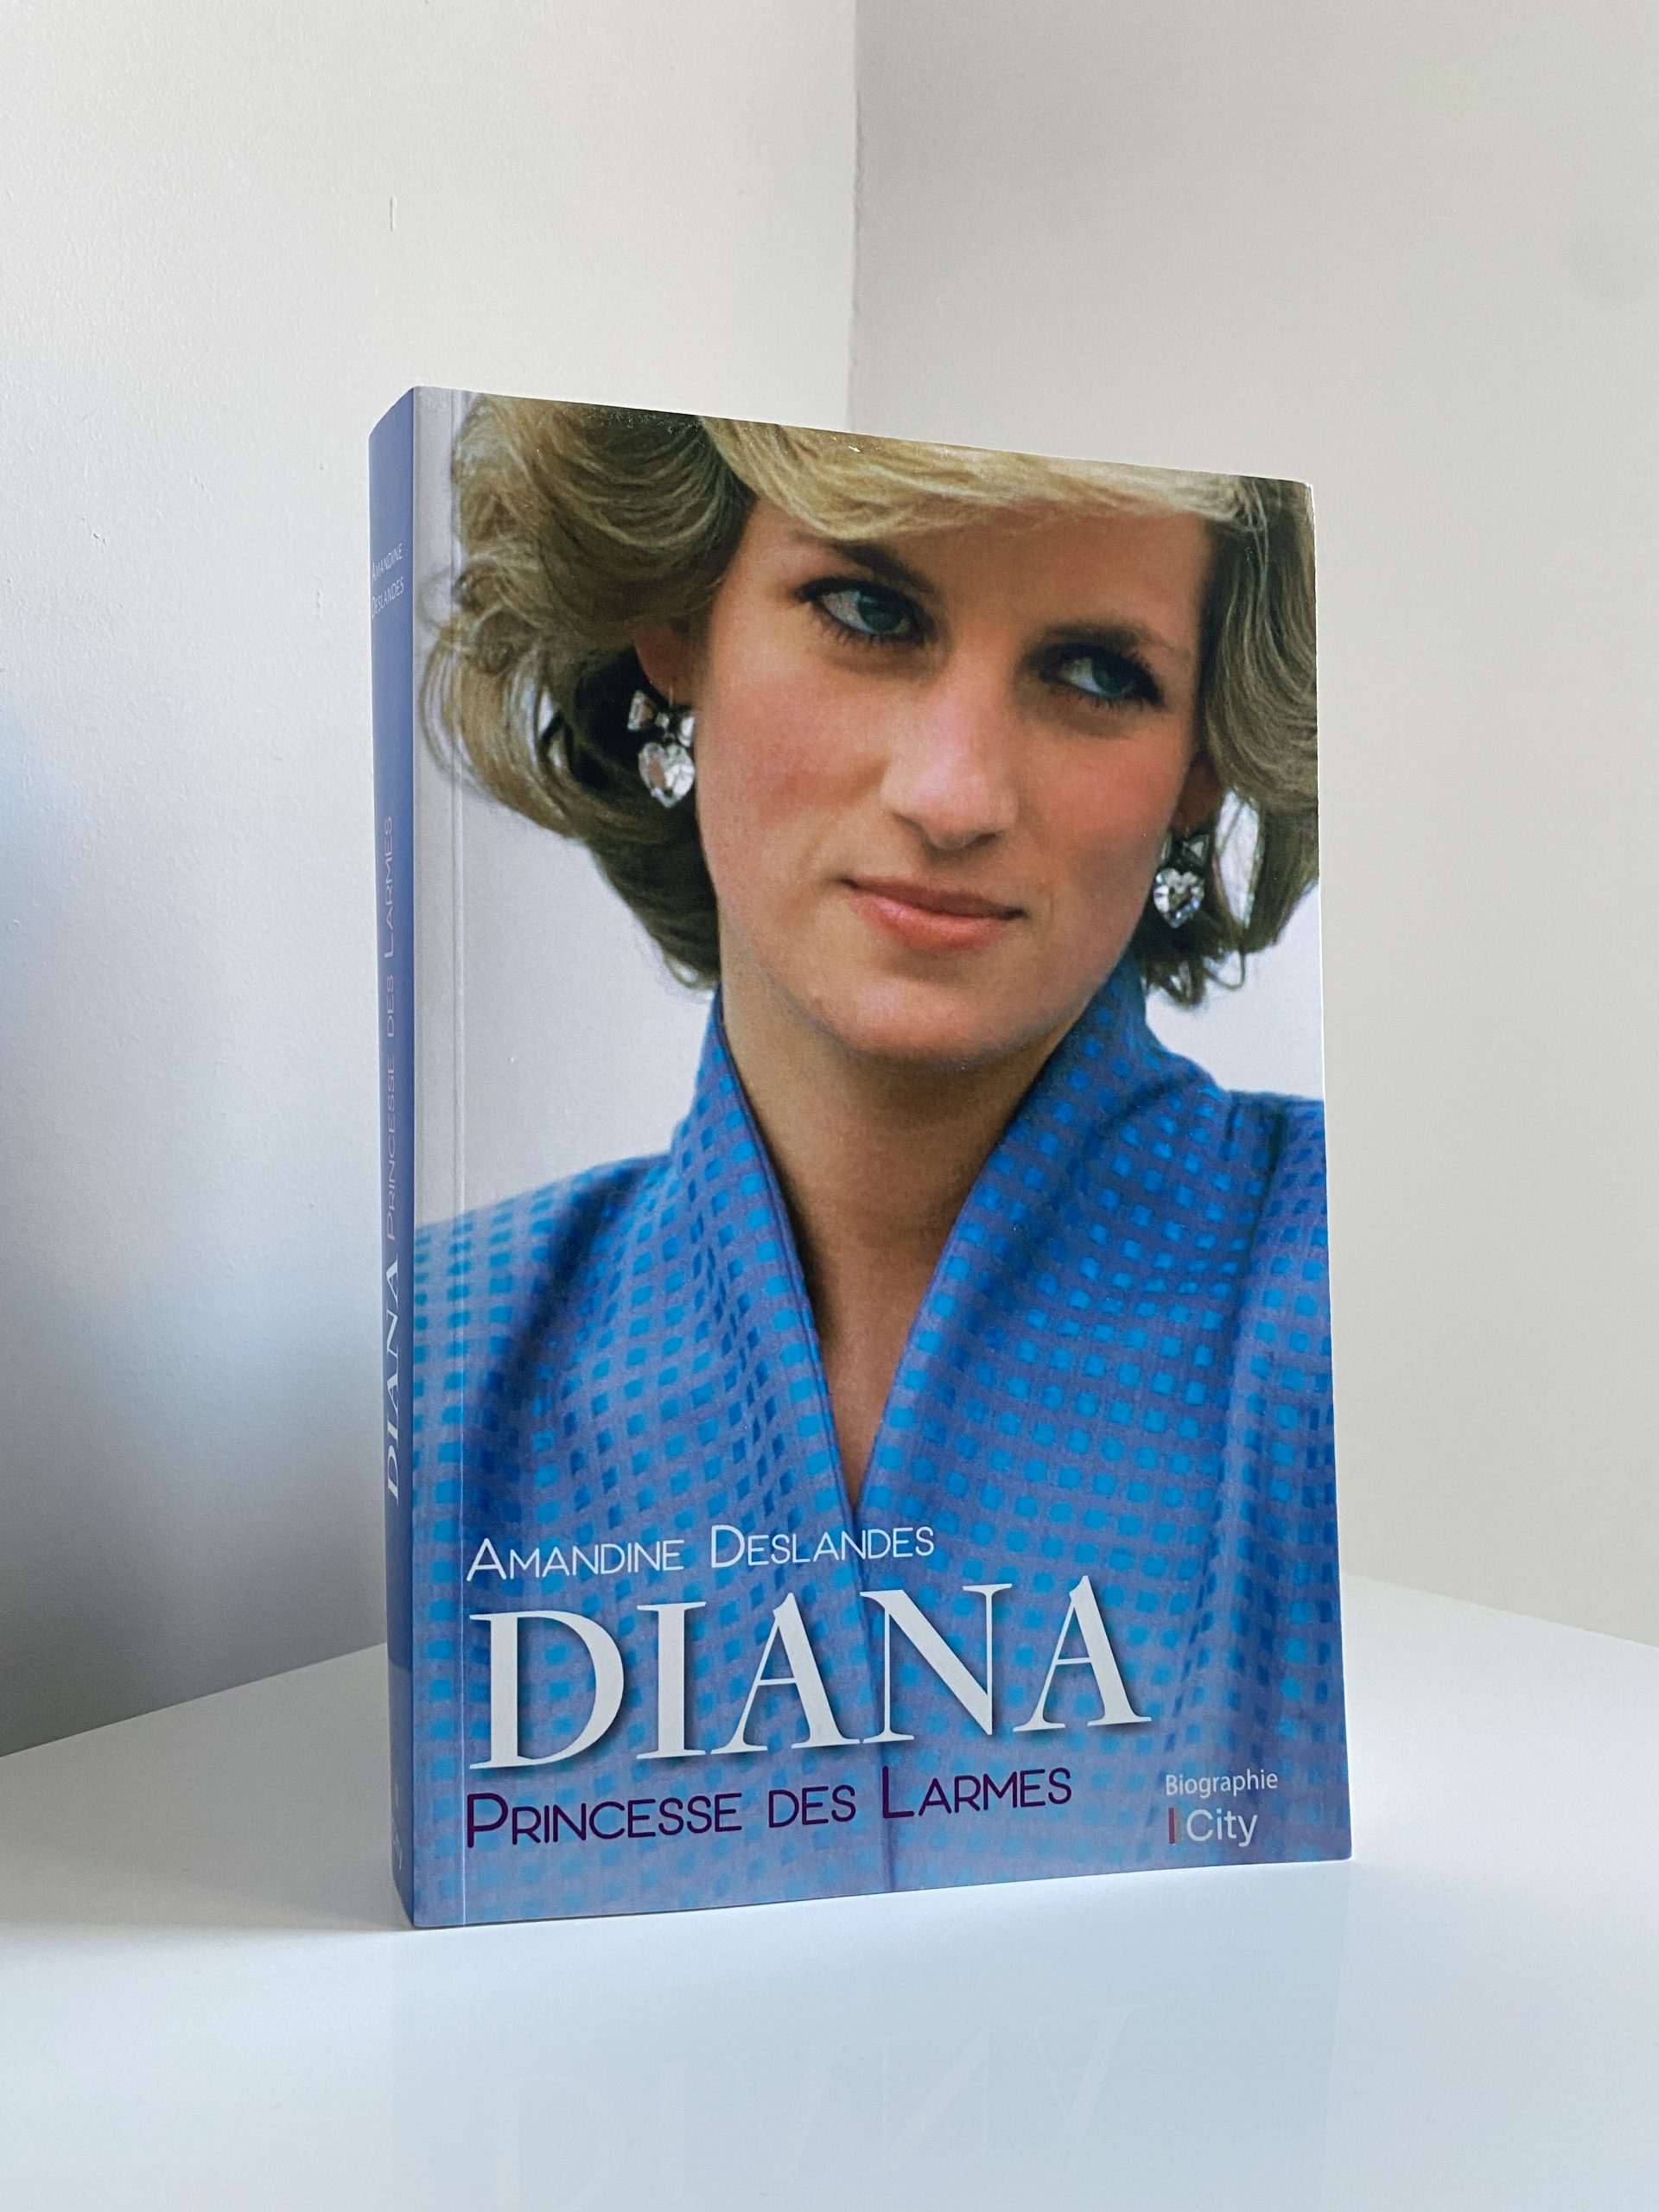 Biographie Lady Diana Princesse de Galles Princesse des larmes par Amandine Deslandes